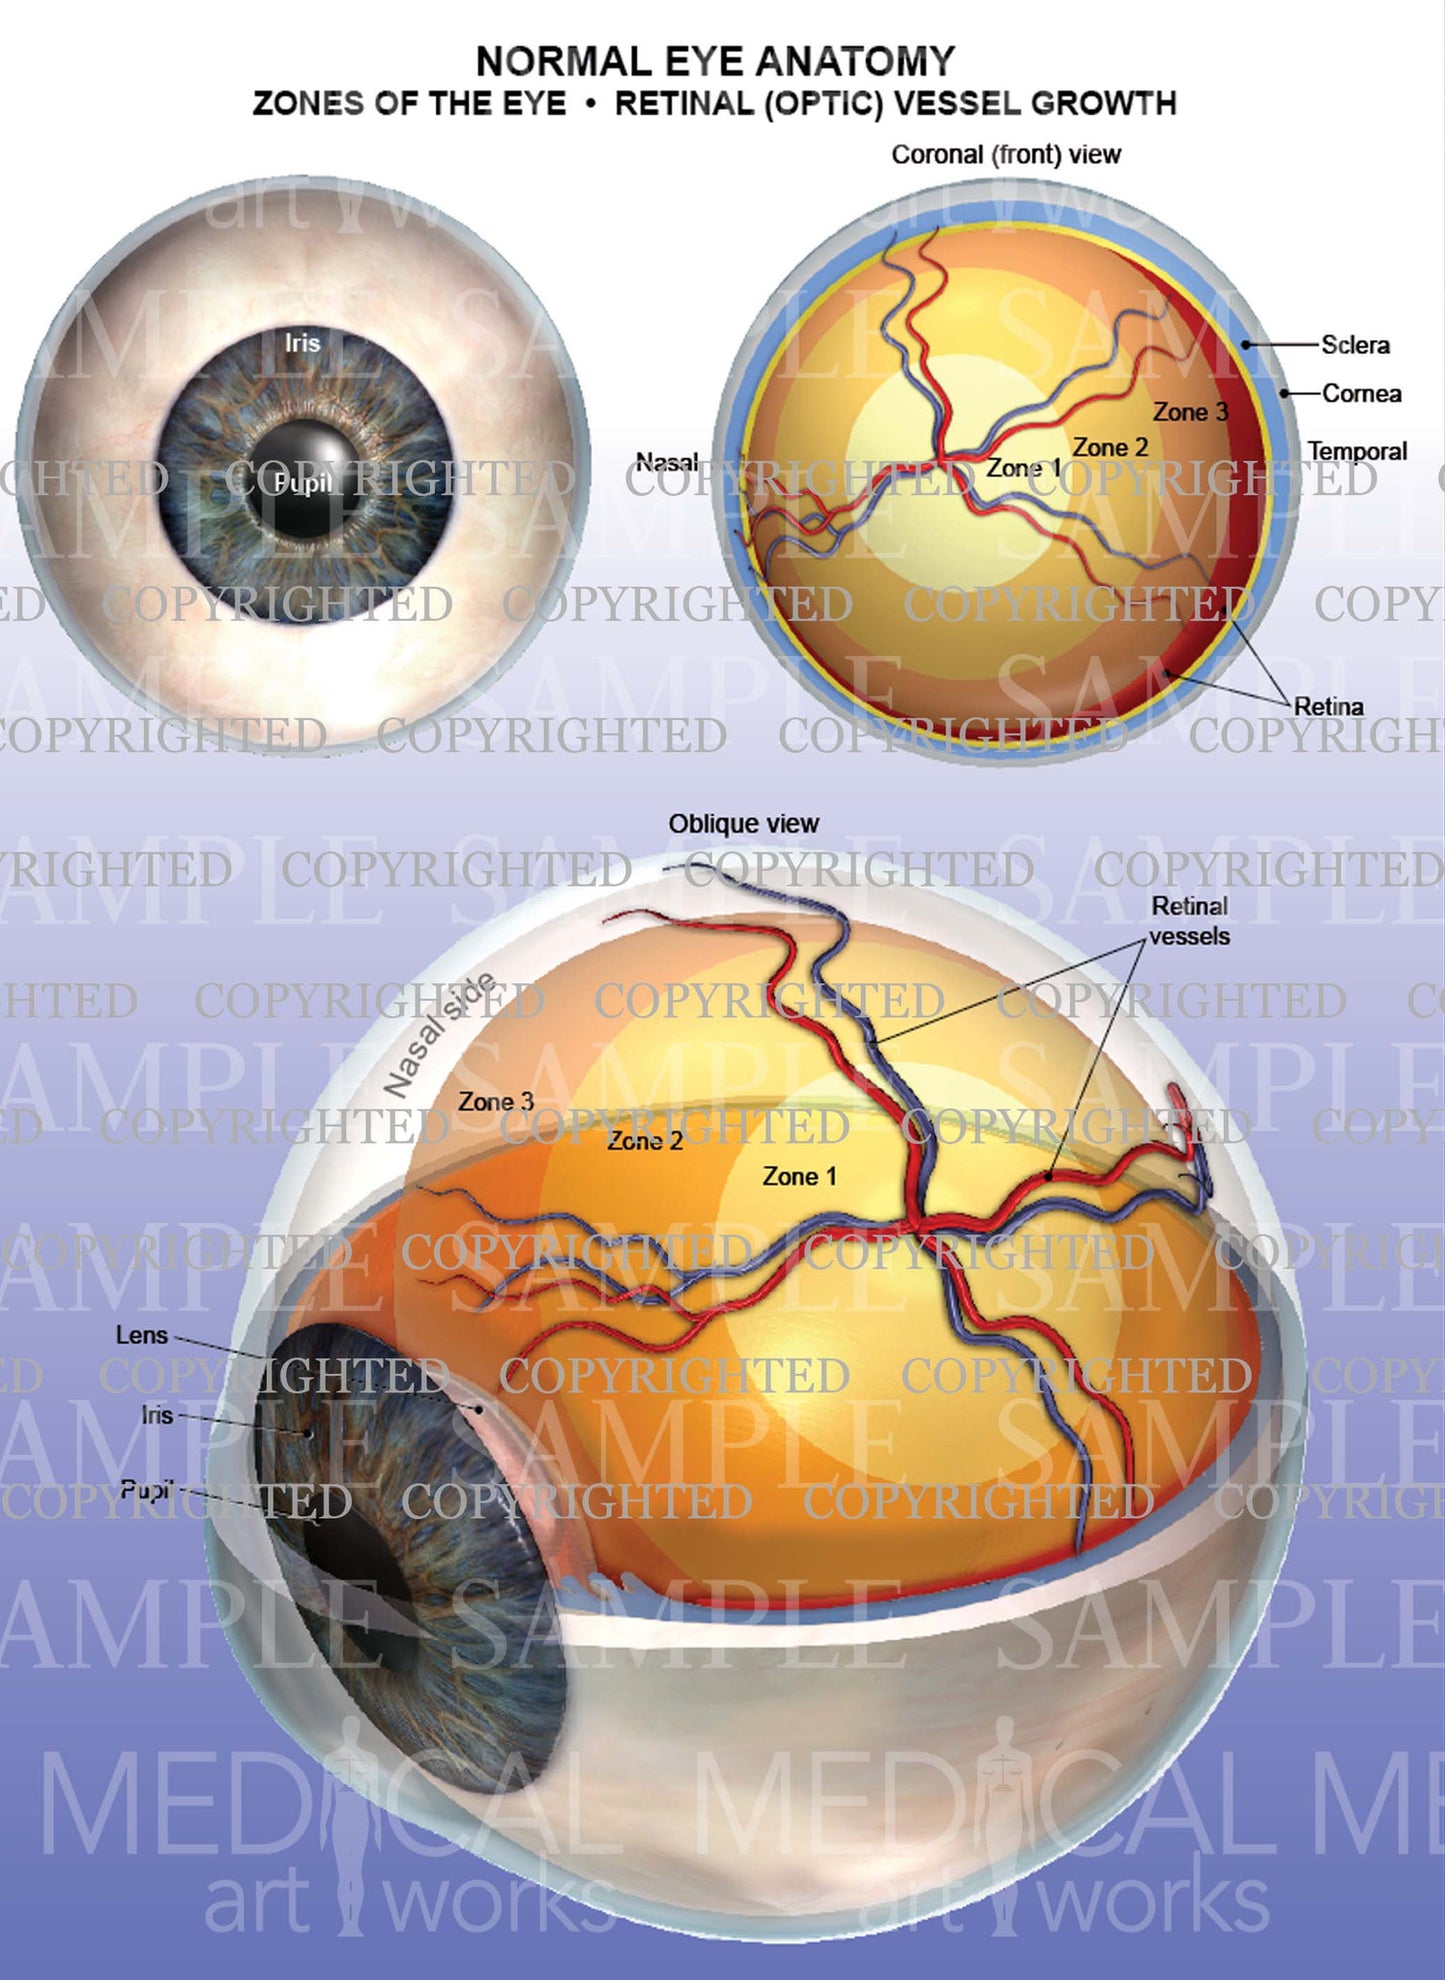 Normal eye anatomy - Zones of the eye - Retinal vessels